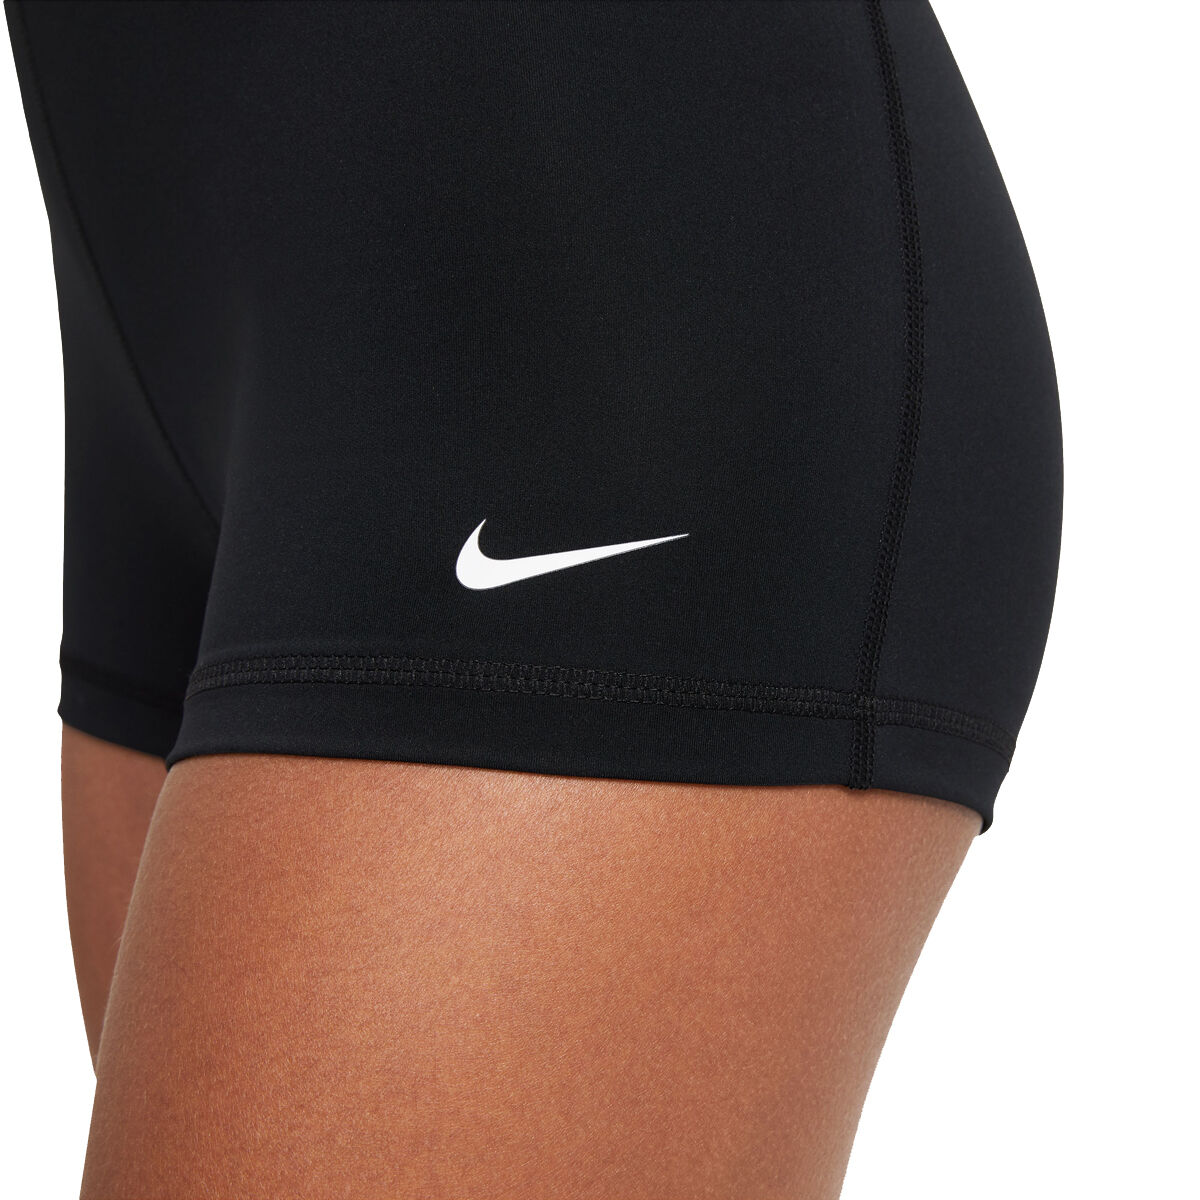 Women's Gym Shorts. Training & Workout Shorts. Nike NL